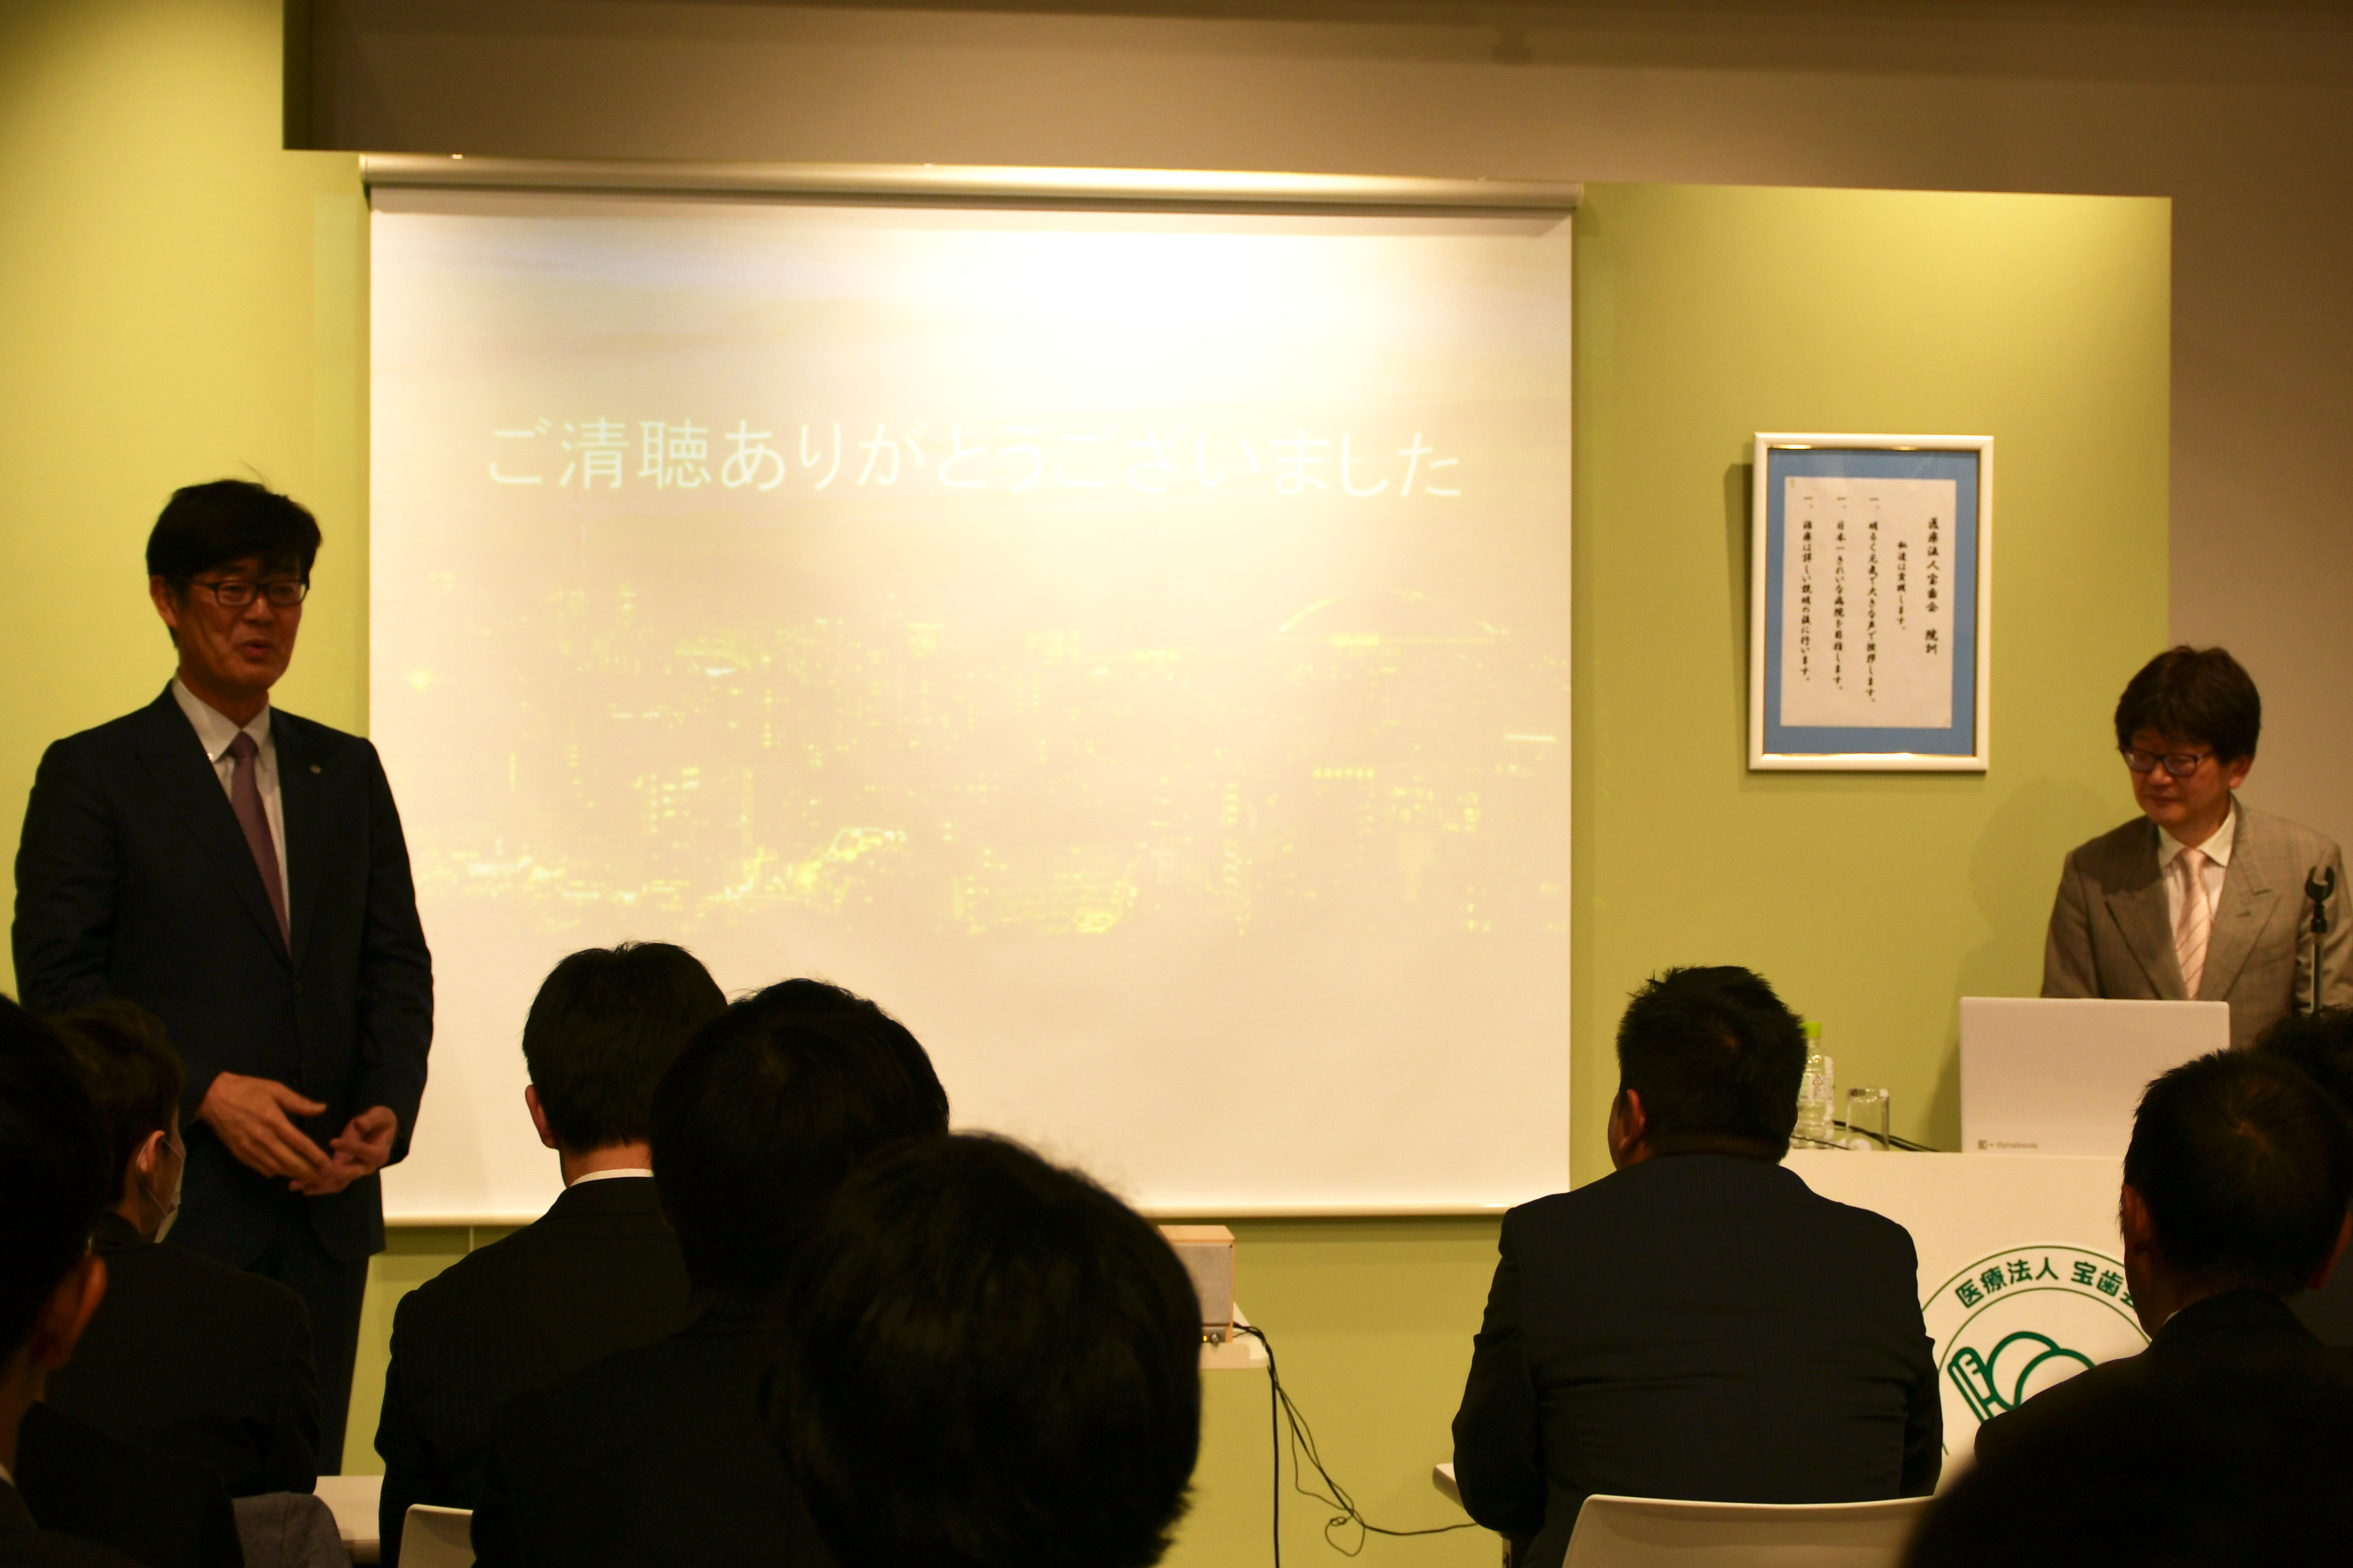 令和2年3月13日に大熊一徳先生のセミナーが開催されました。